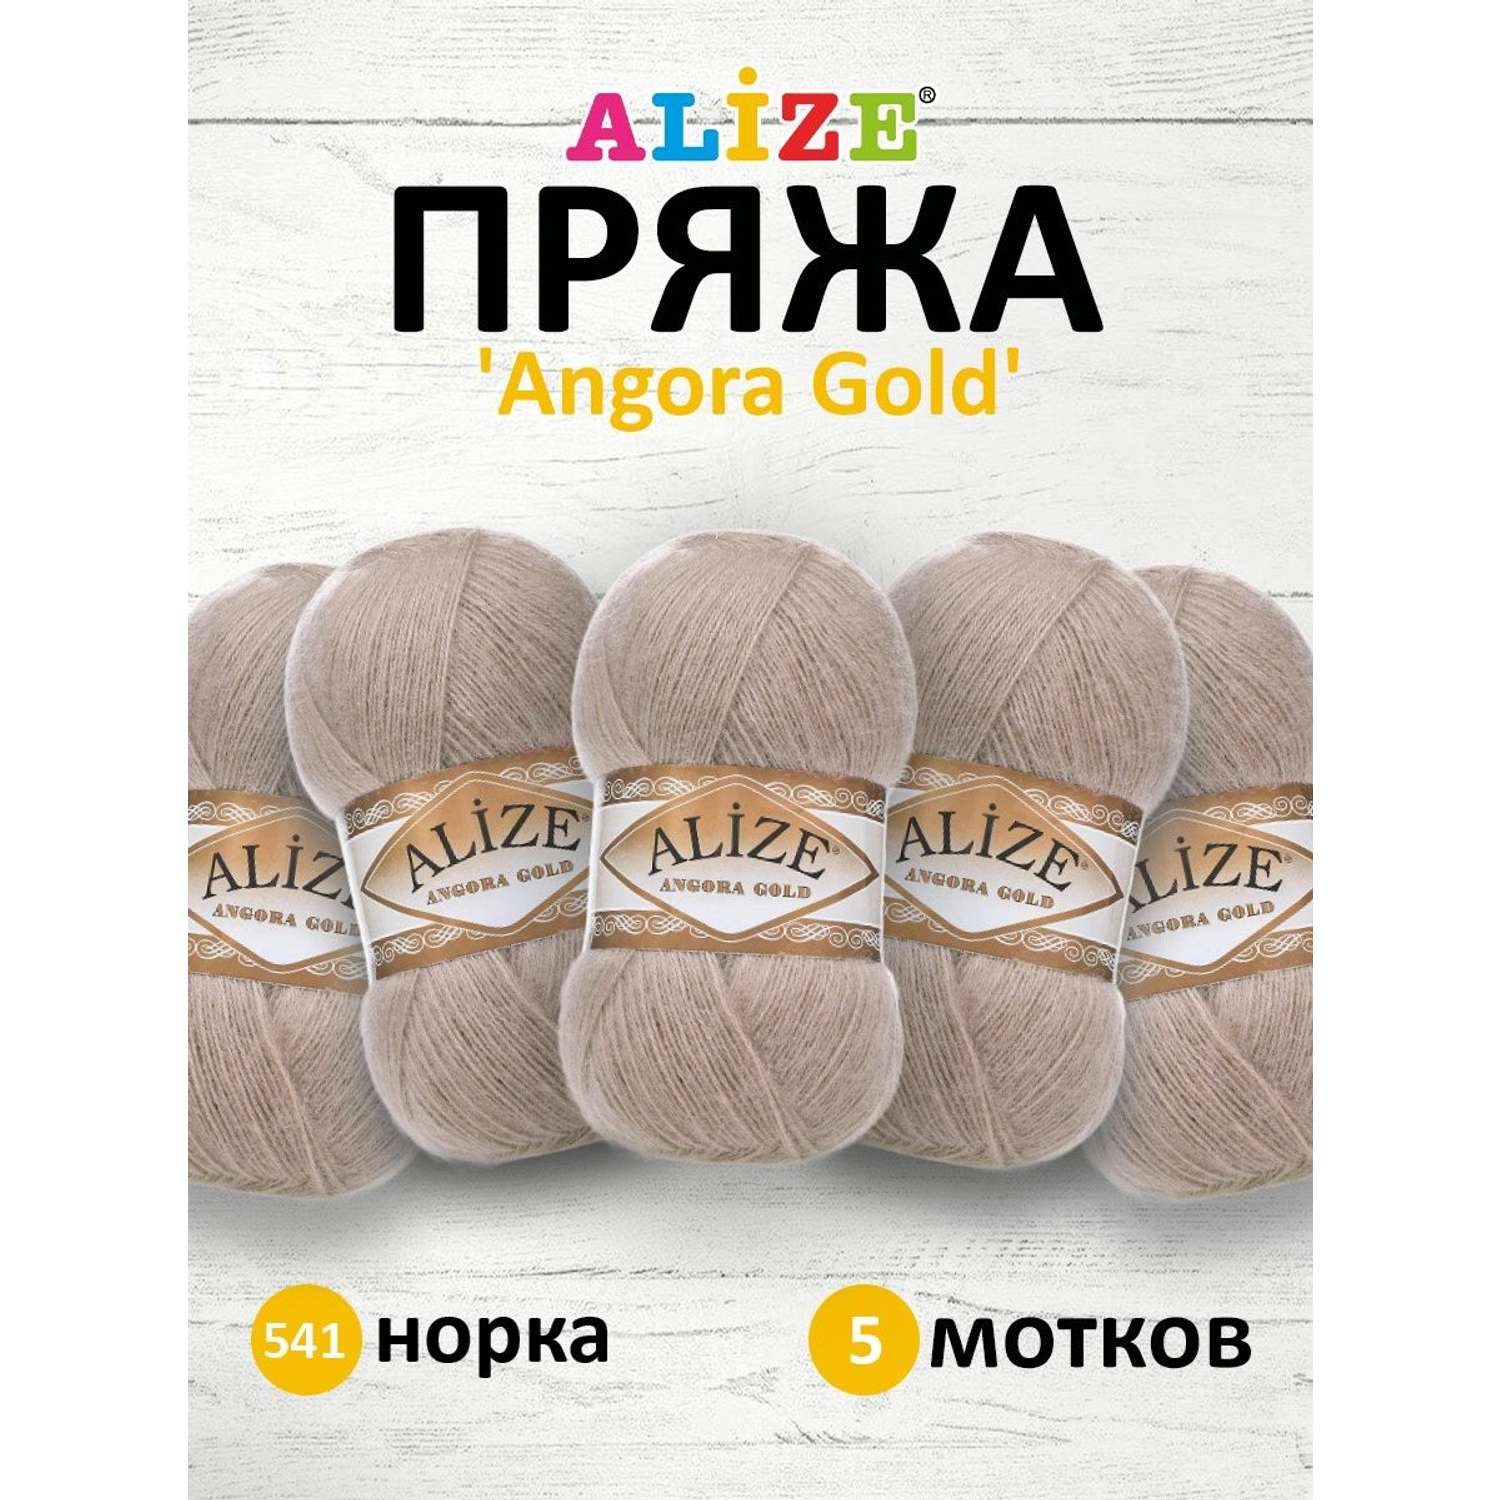 Пряжа Alize мягкая теплая для шарфов кардиганов Angora Gold 100 гр 550 м 5 мотков 541 норка - фото 1